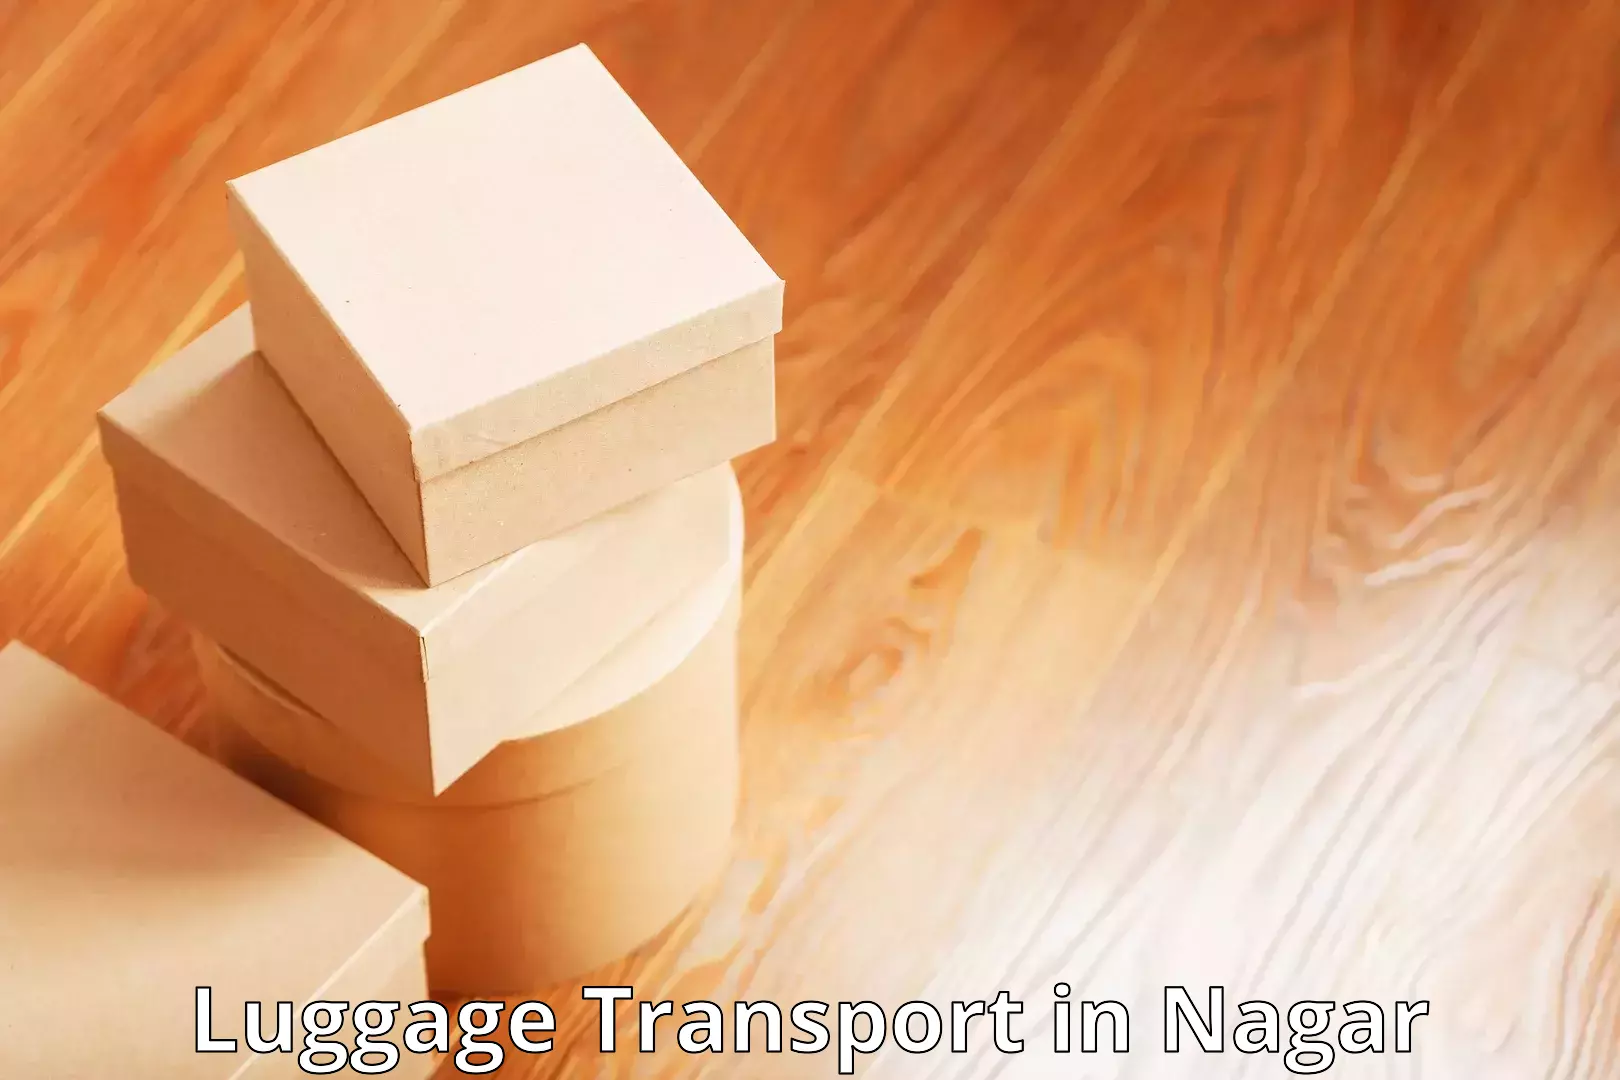 Domestic luggage transport in Nagar